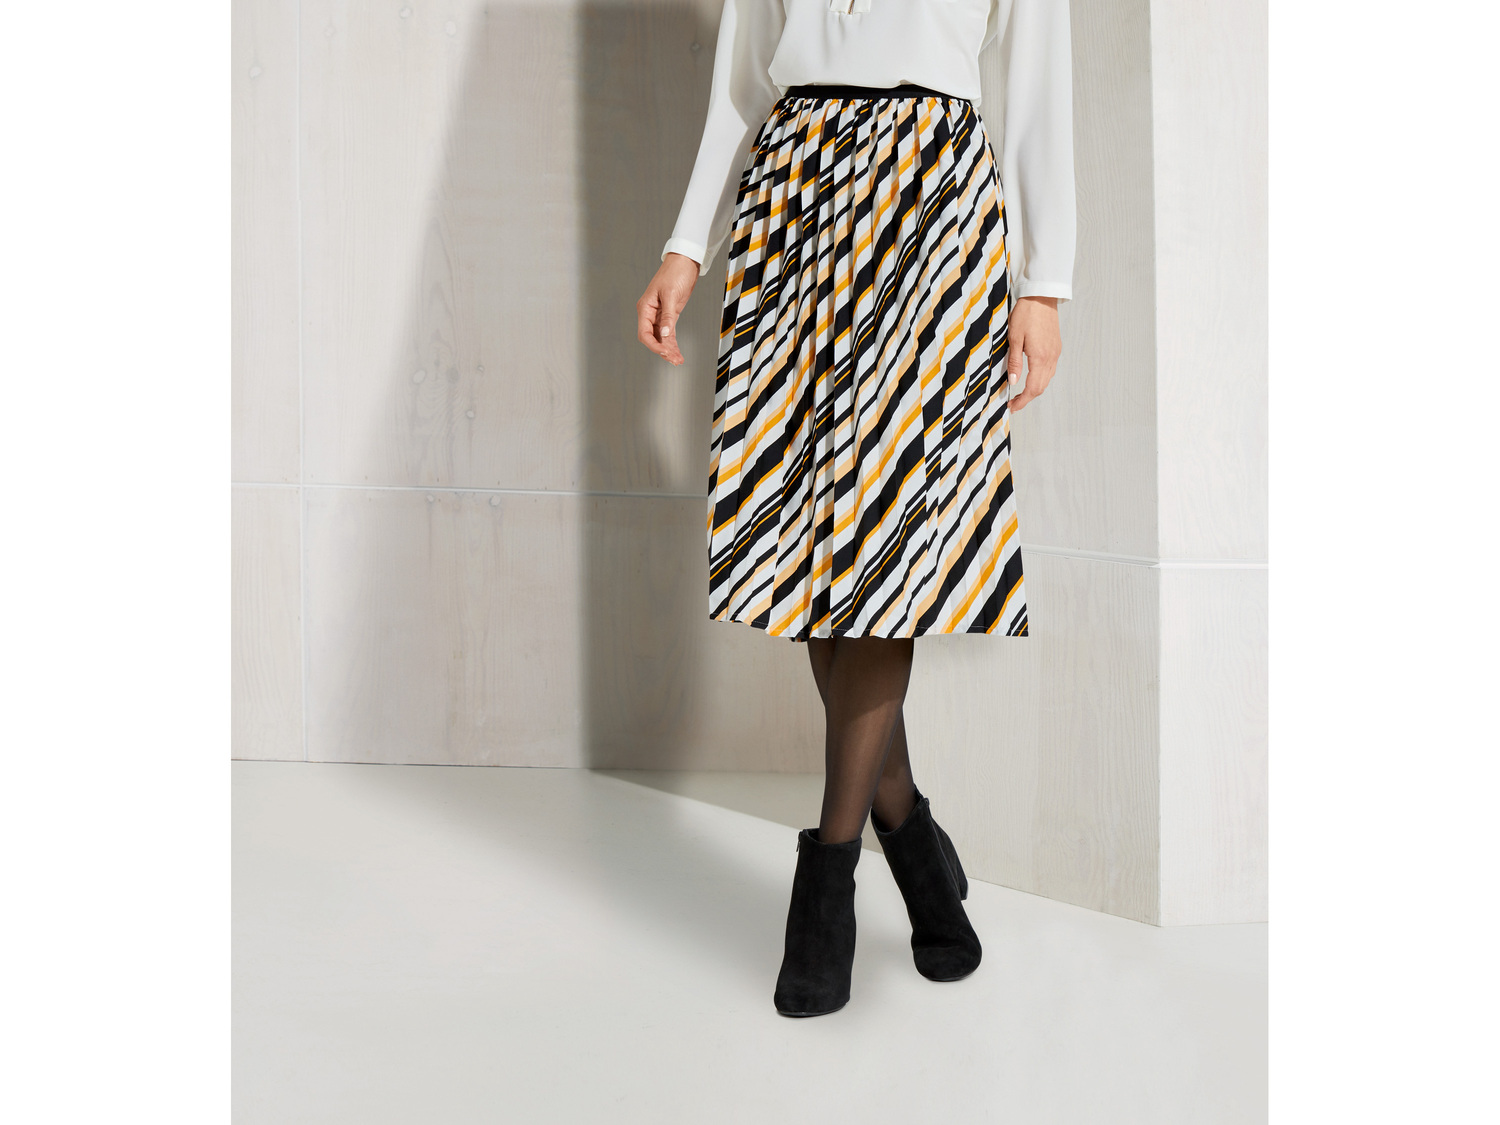 Spódnica damska Esmara, cena 39,99 PLN 
- rozmiary: 36-40
- modne wzory
Dostępne ...